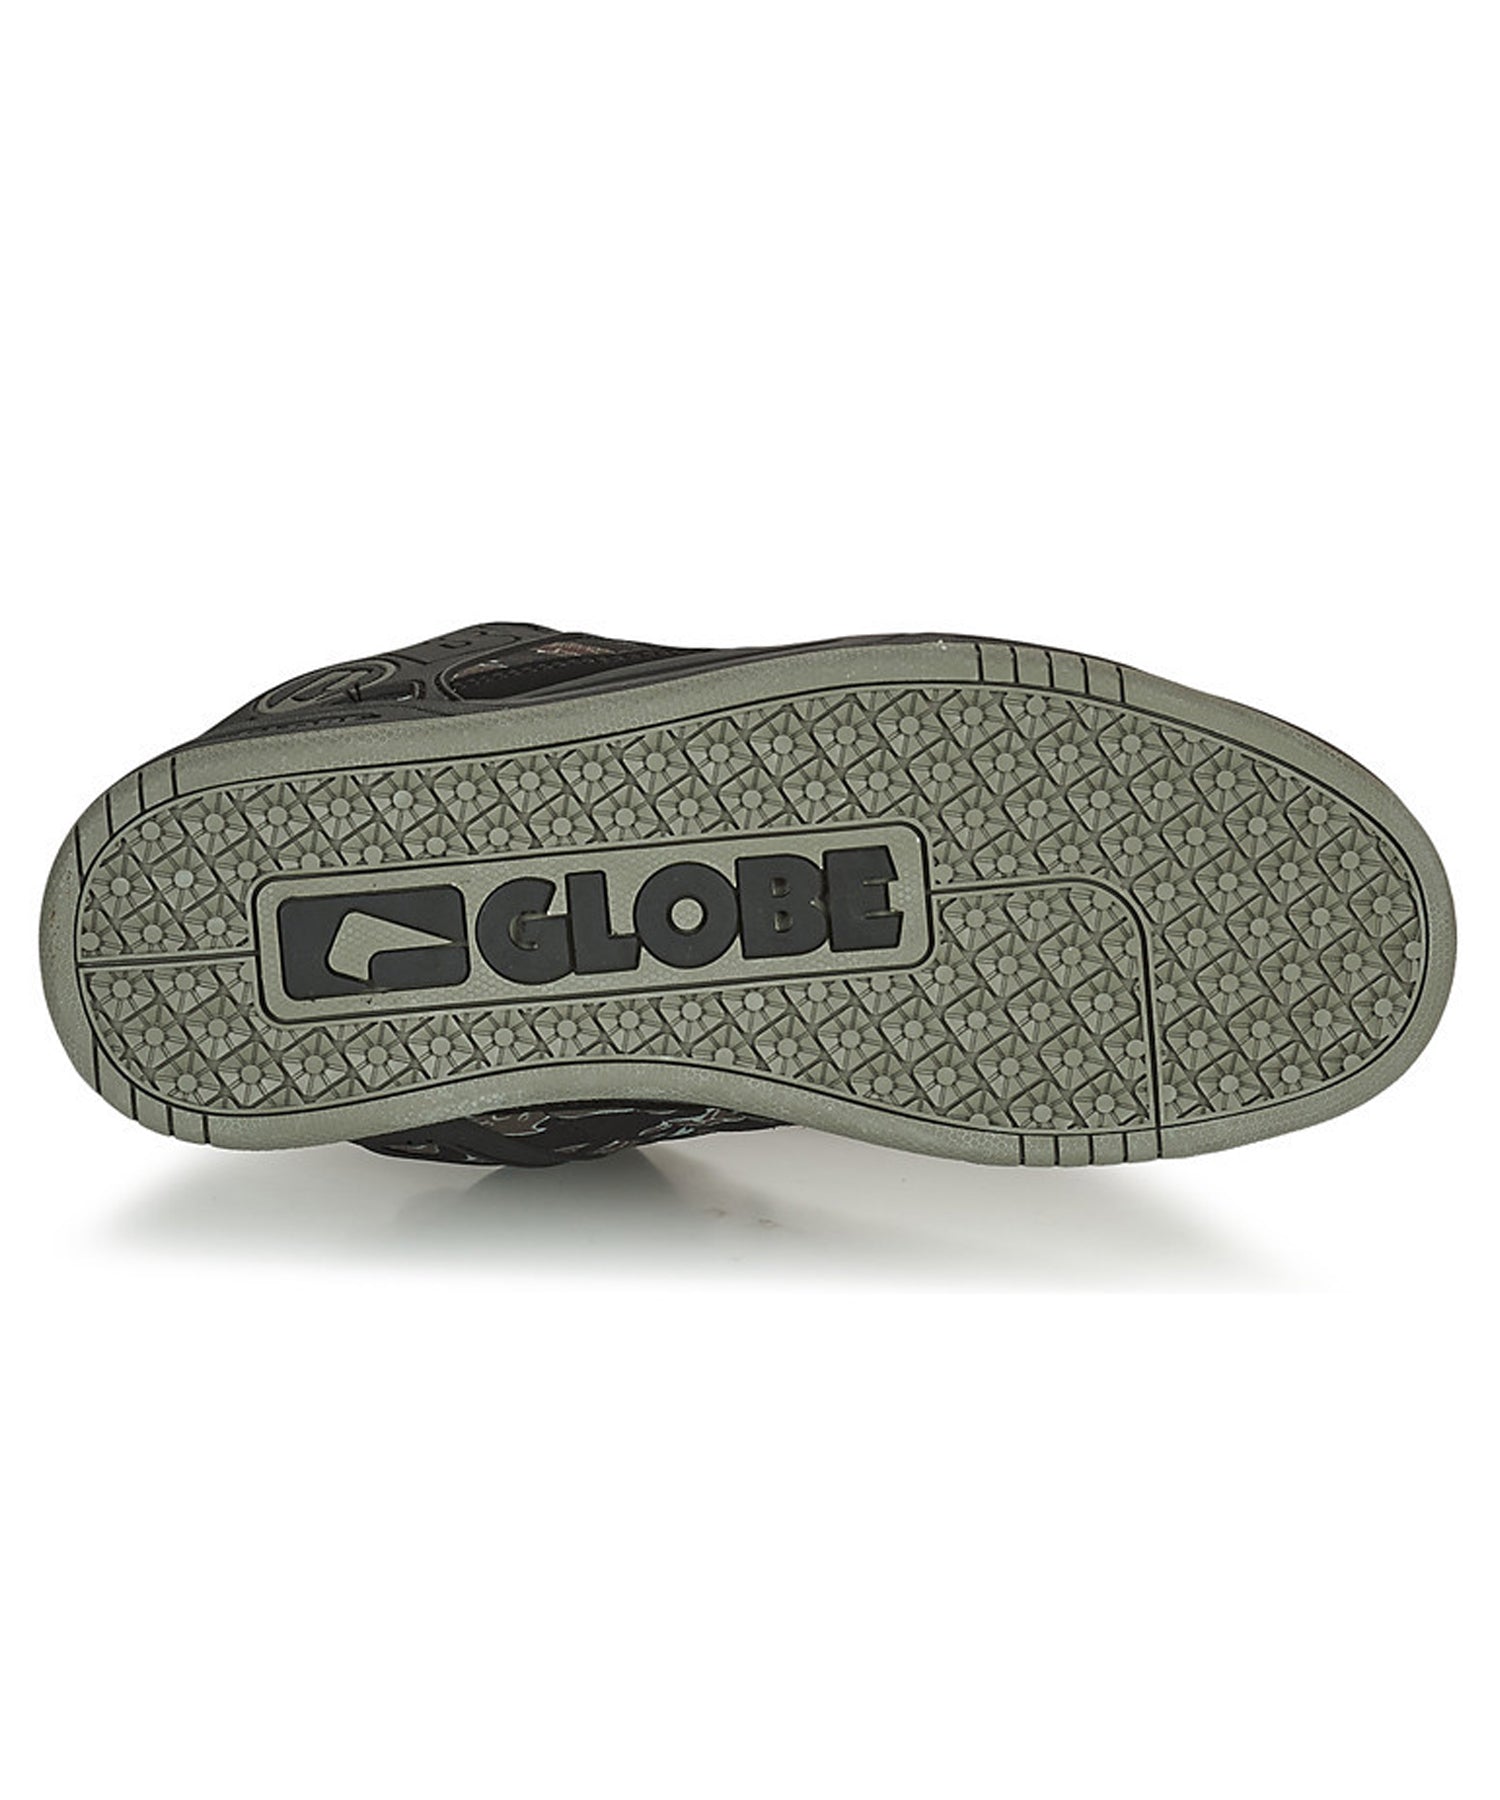 globe-zapatillas-tilt-black-tiger-camo-actualización de la clásica zapatilla de globe-color-negro-mayor durabilidad-agarre total-hecha de nobuck-y piel sintética.